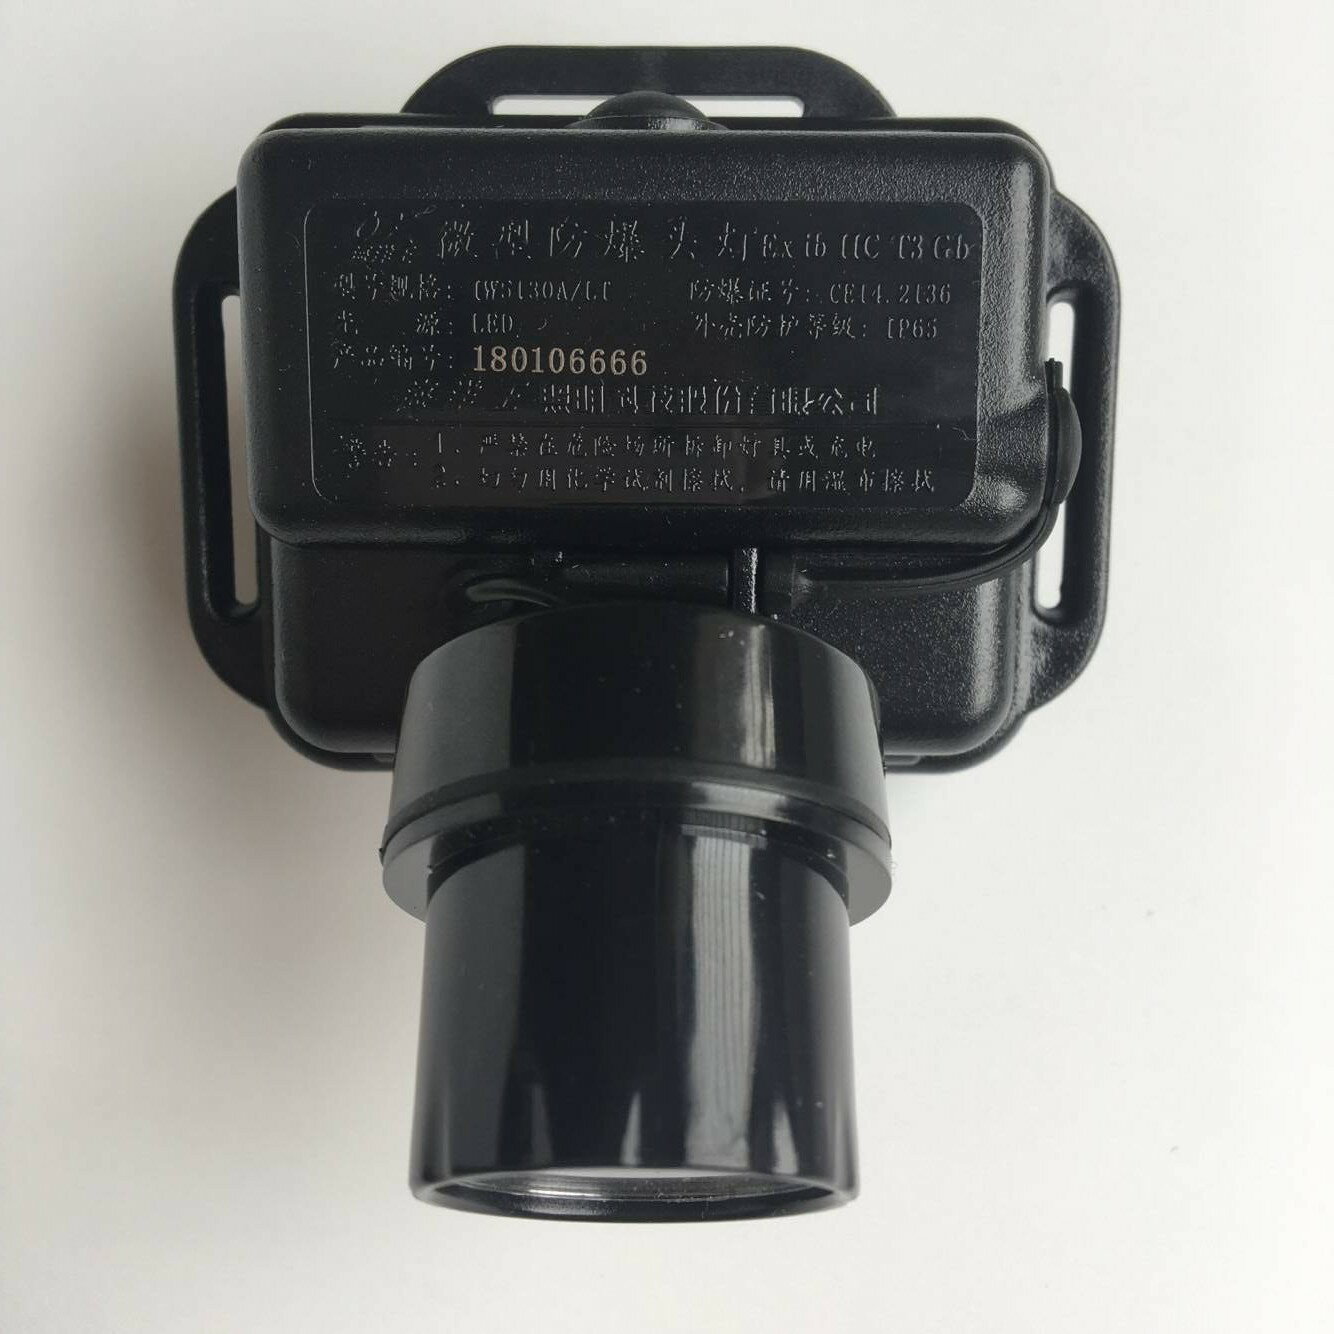 海洋王IW5130A/LT 海洋王防爆頭燈 強光手電筒 消防化工礦燈